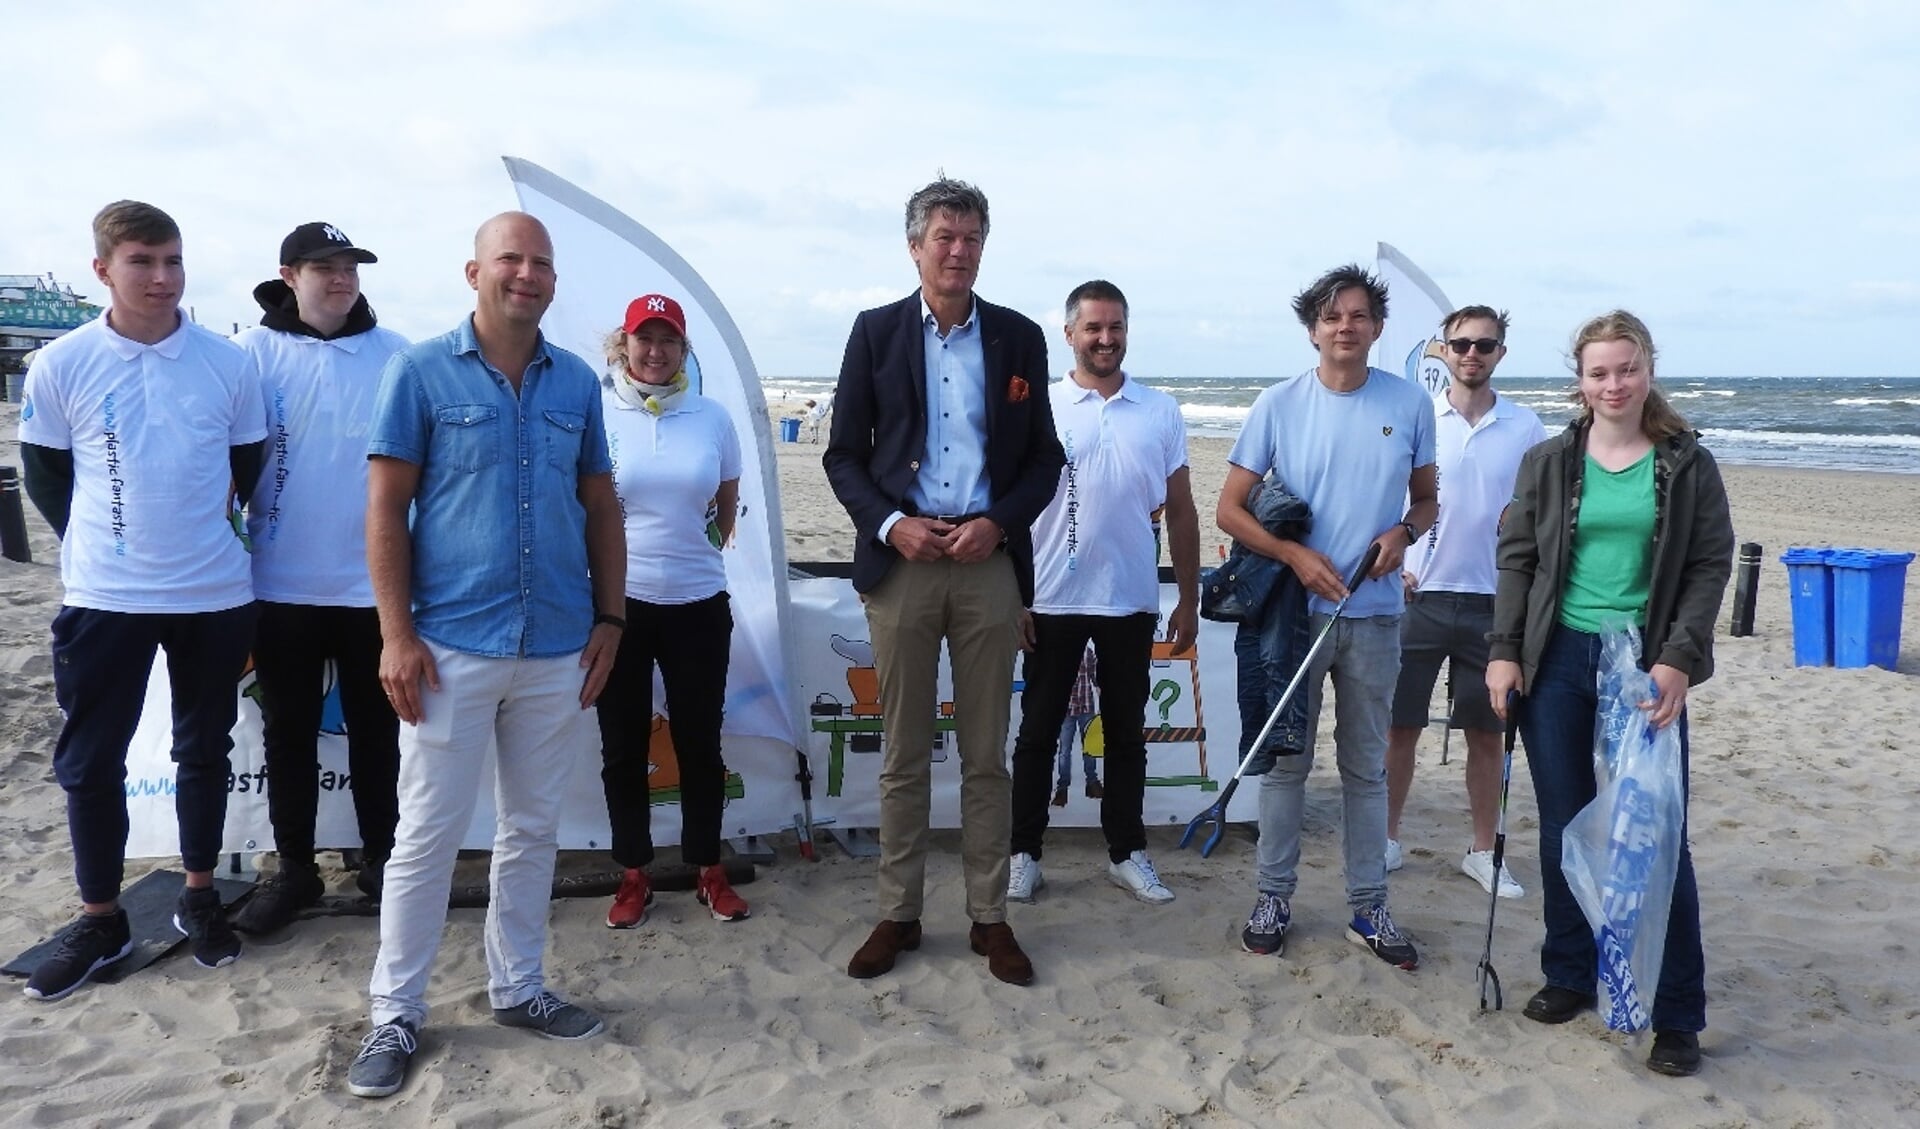 Burgemeester Mans bij de start met vertegenwoordigers van Camping Geversduin, Boskalis Beach Cleanup, Stichting Noordzee en Save Plastics/Plastic Fantastic.